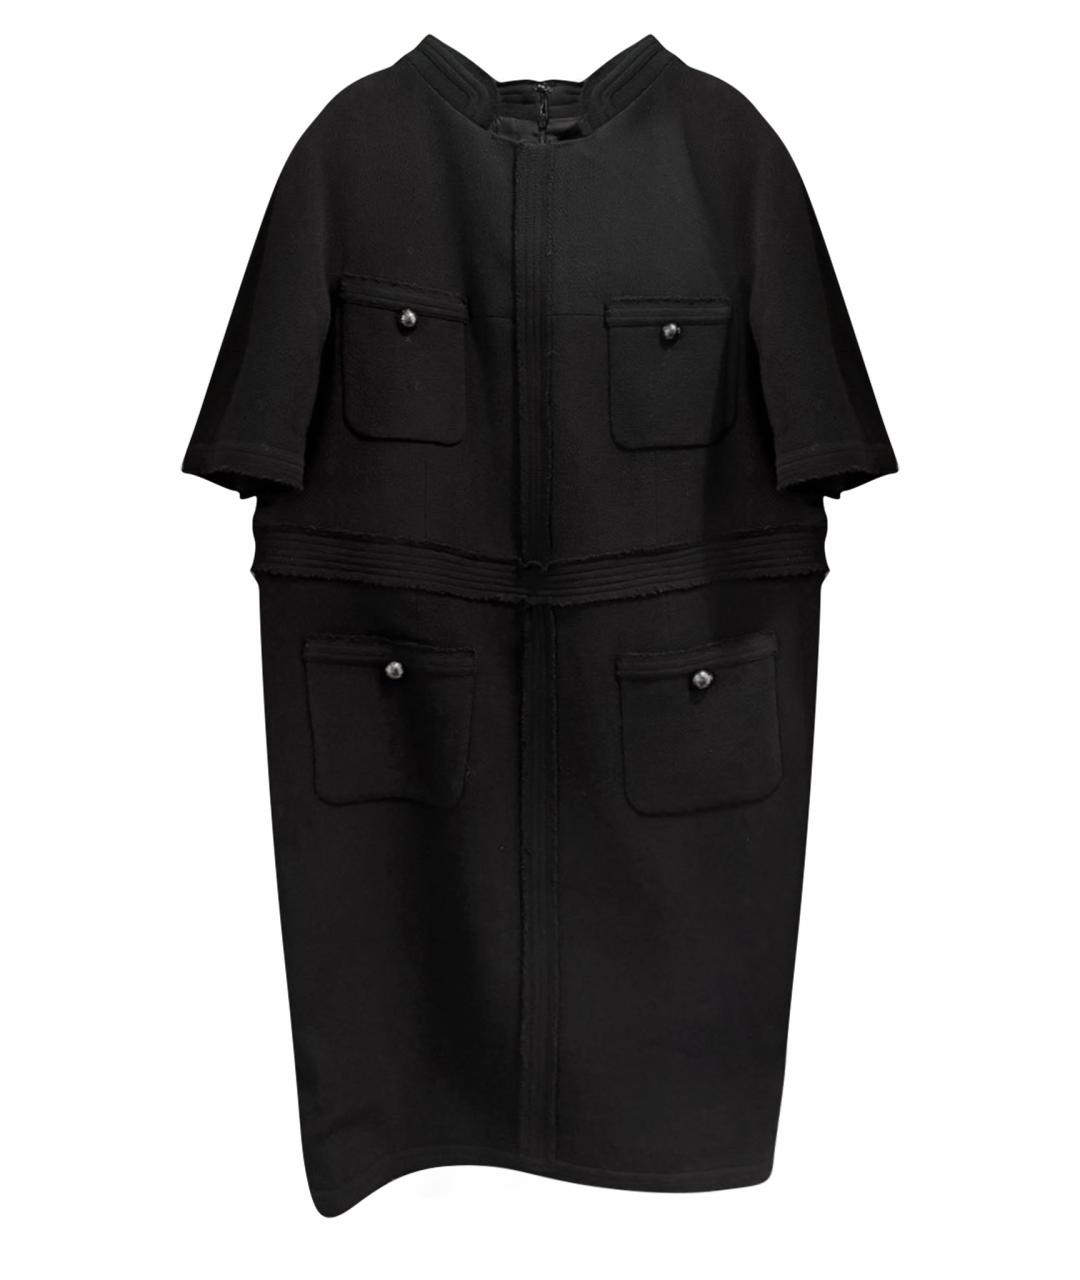 CHANEL PRE-OWNED Черное твидовое повседневное платье, фото 1